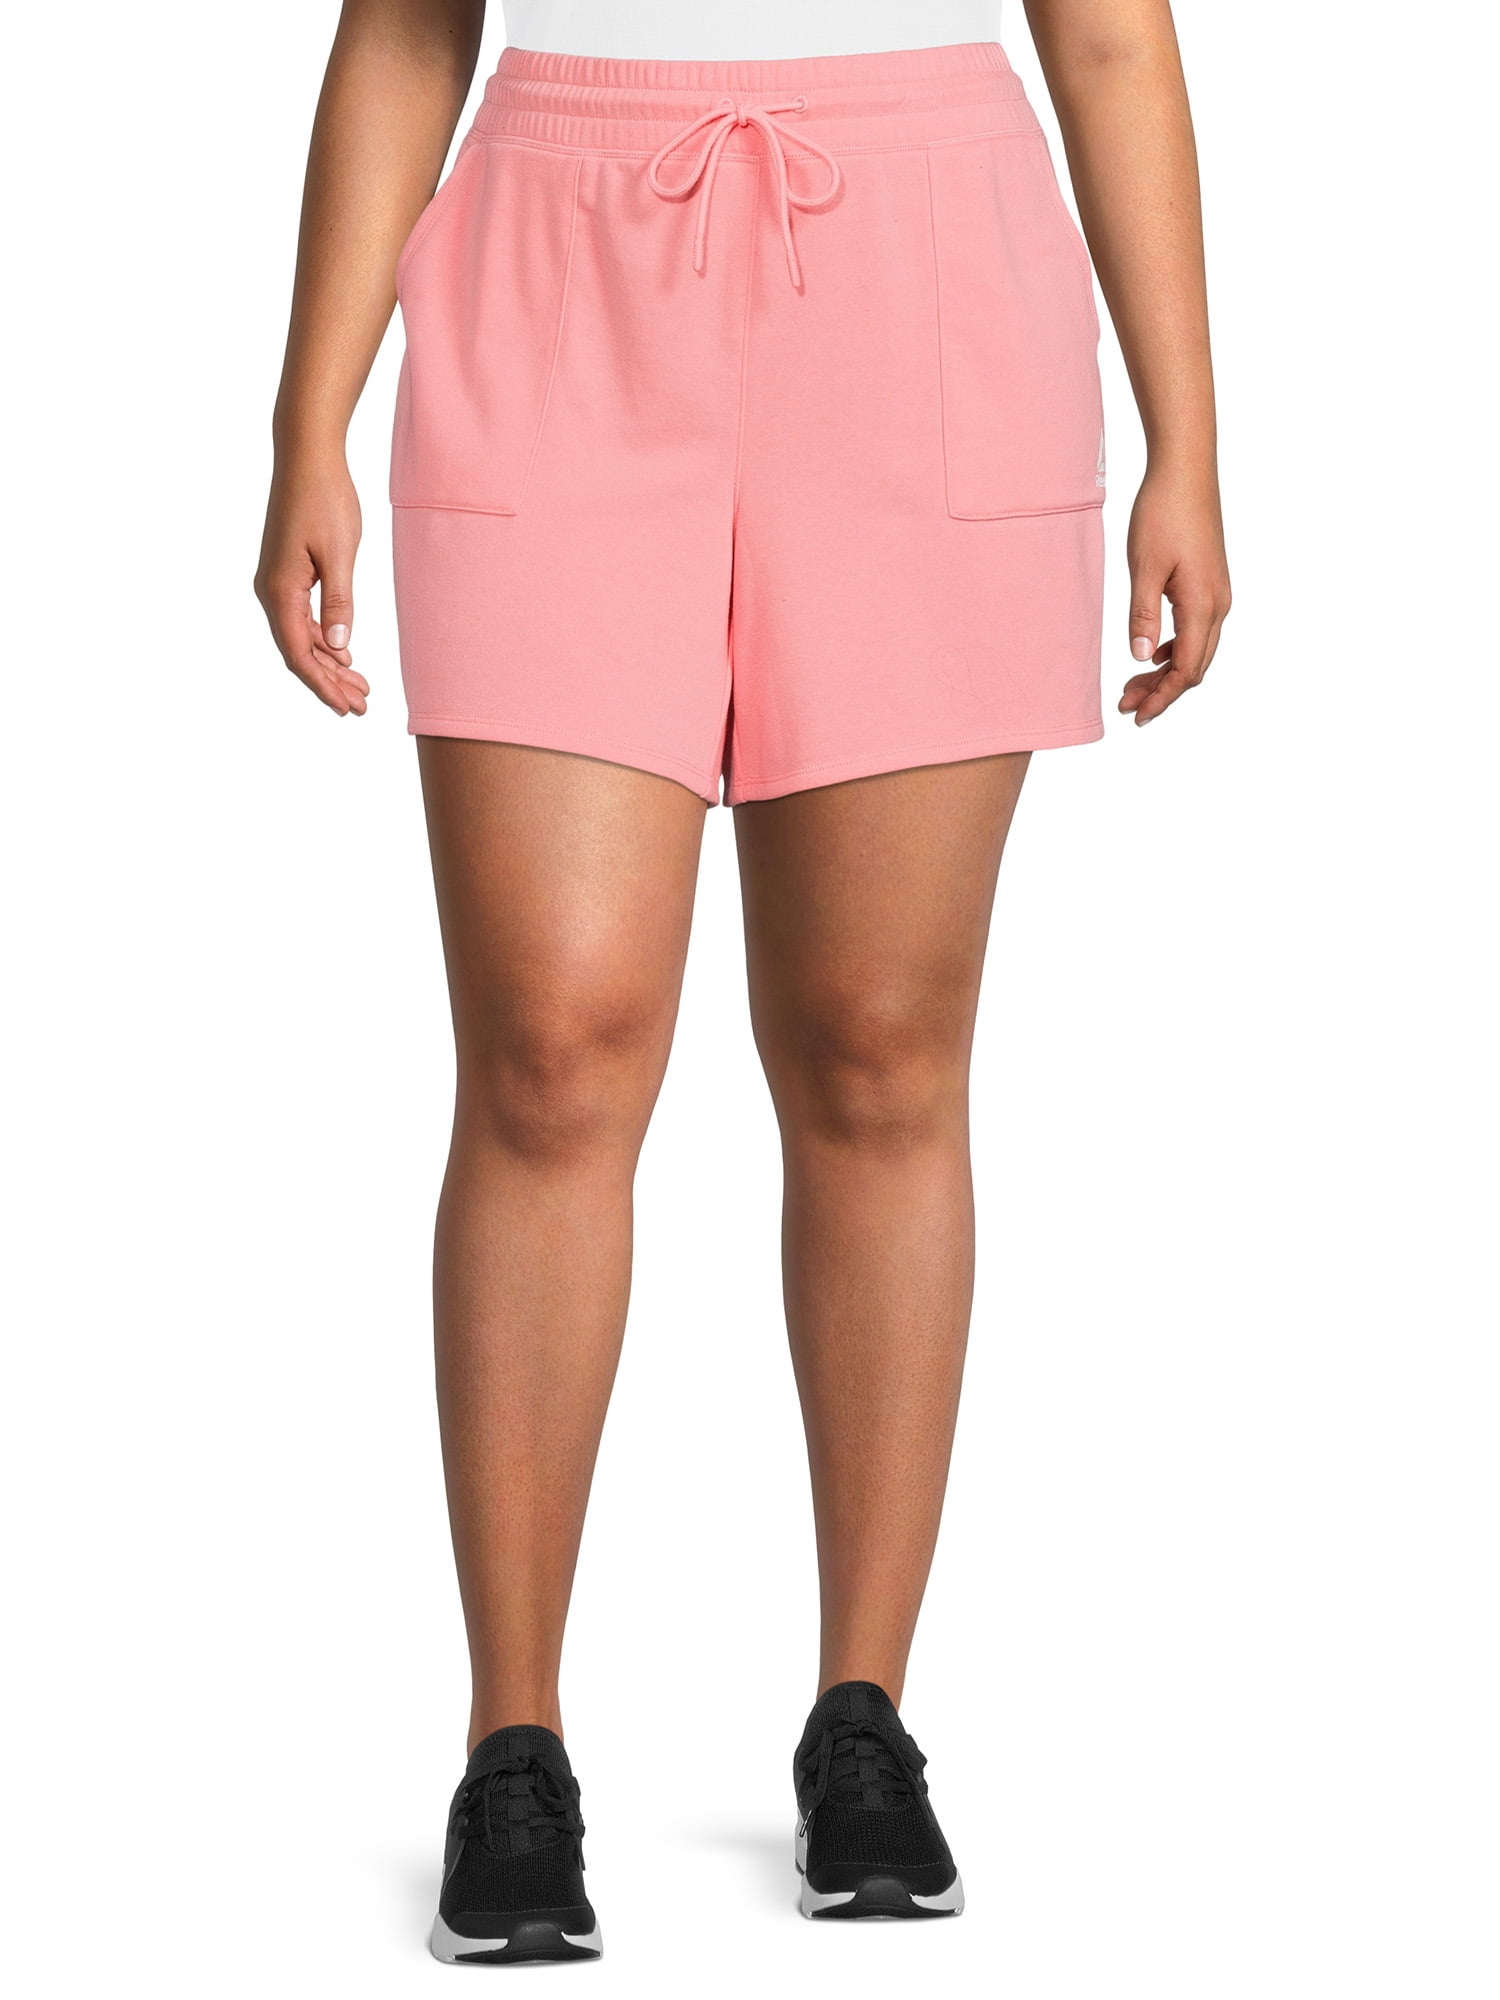 Reebok Women's Plus Size 4 Inseam Favorite Short with Side